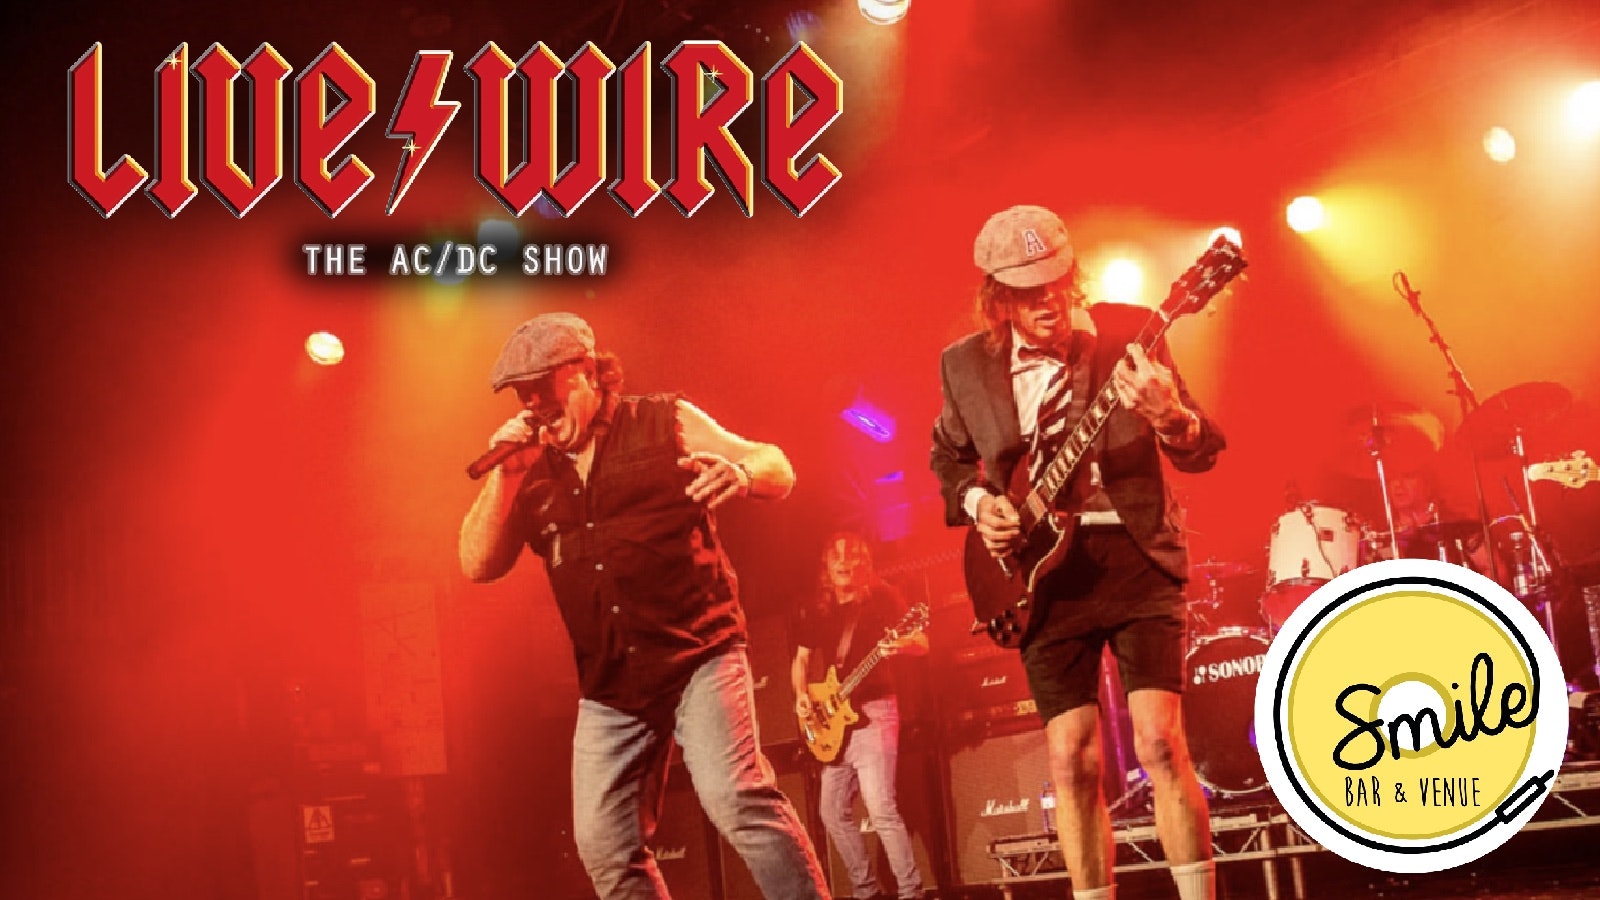 Livewire the AC/DC show